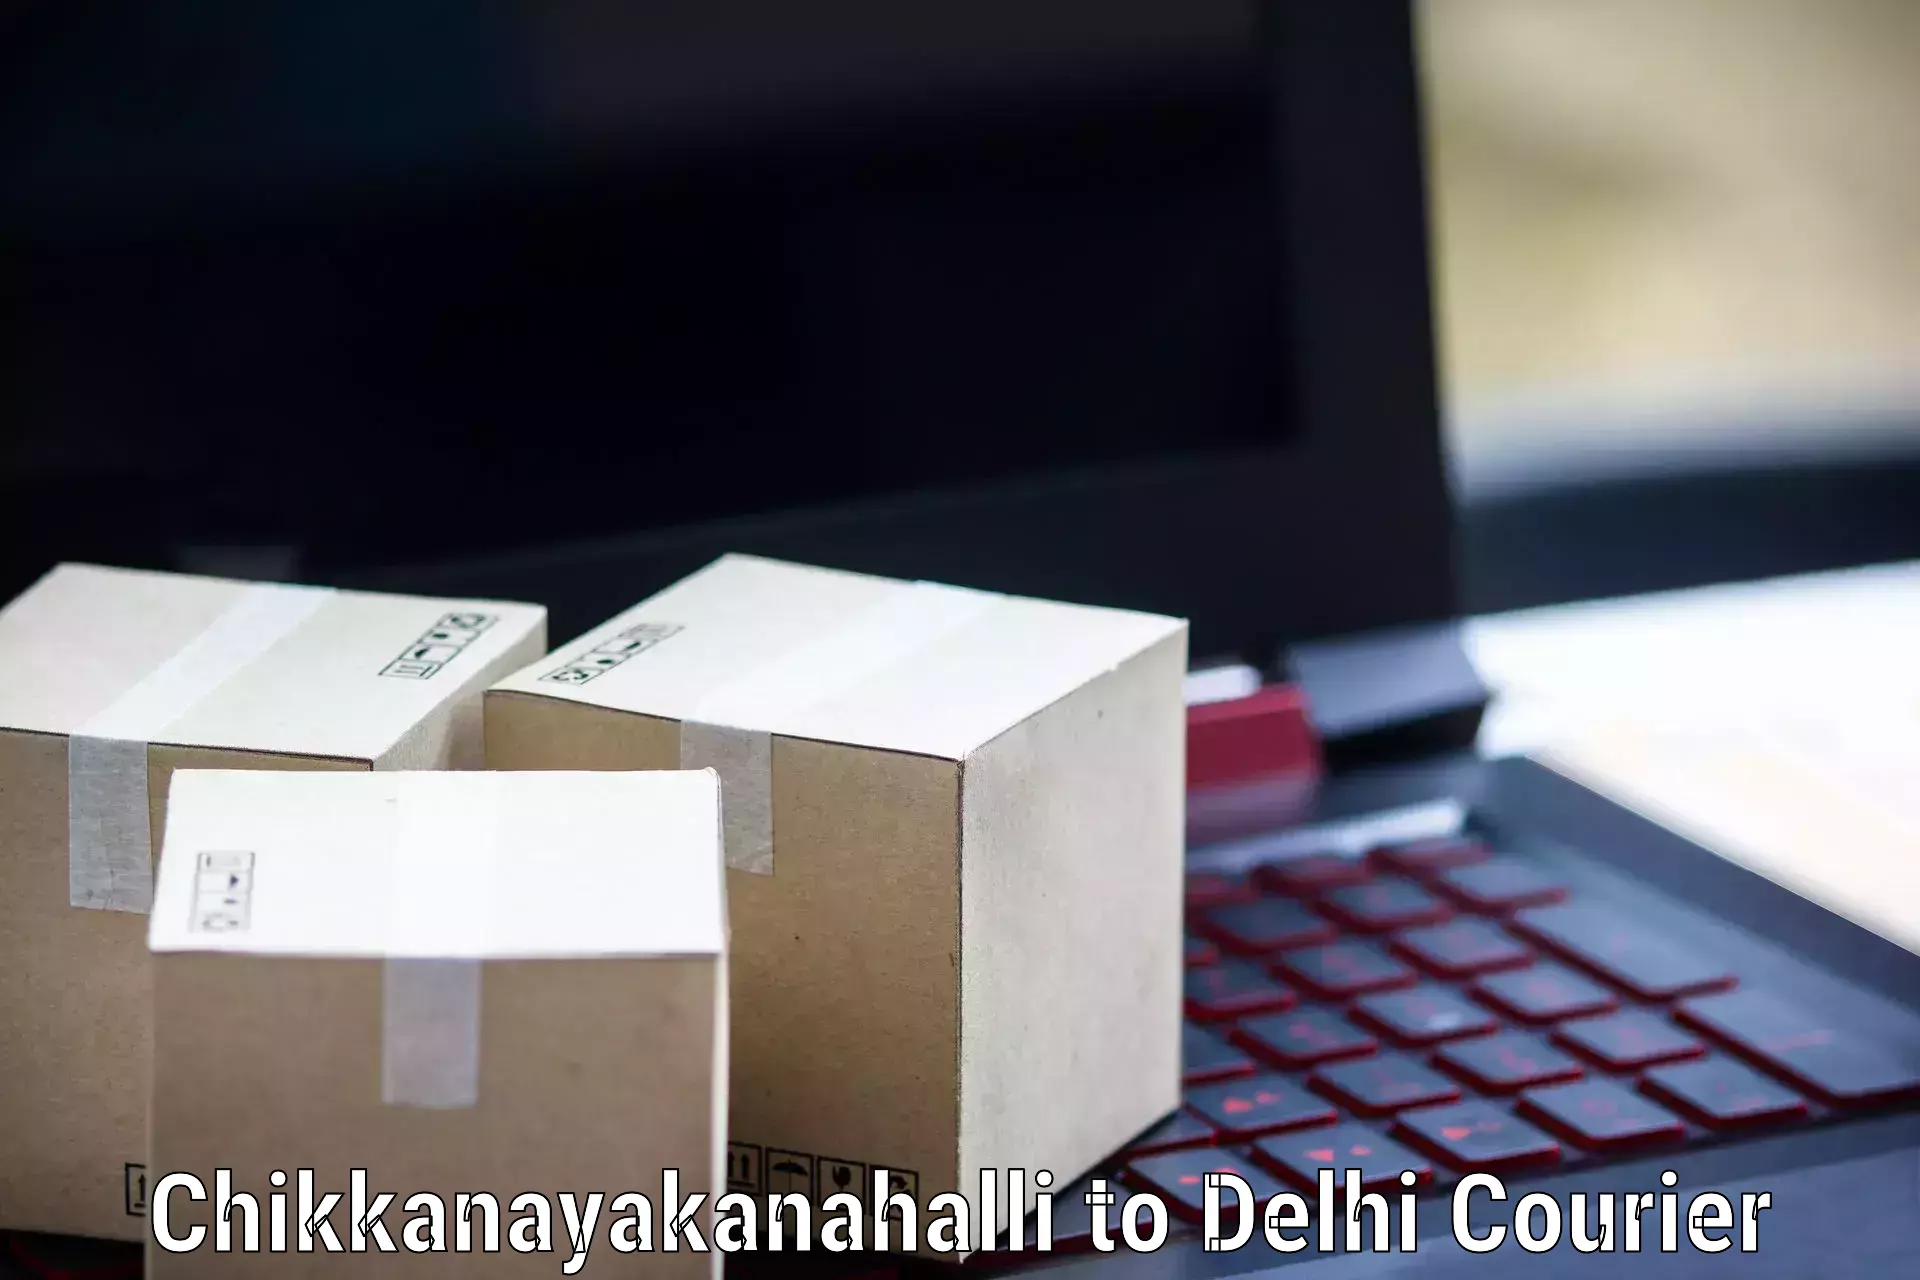 Multi-national courier services Chikkanayakanahalli to Subhash Nagar